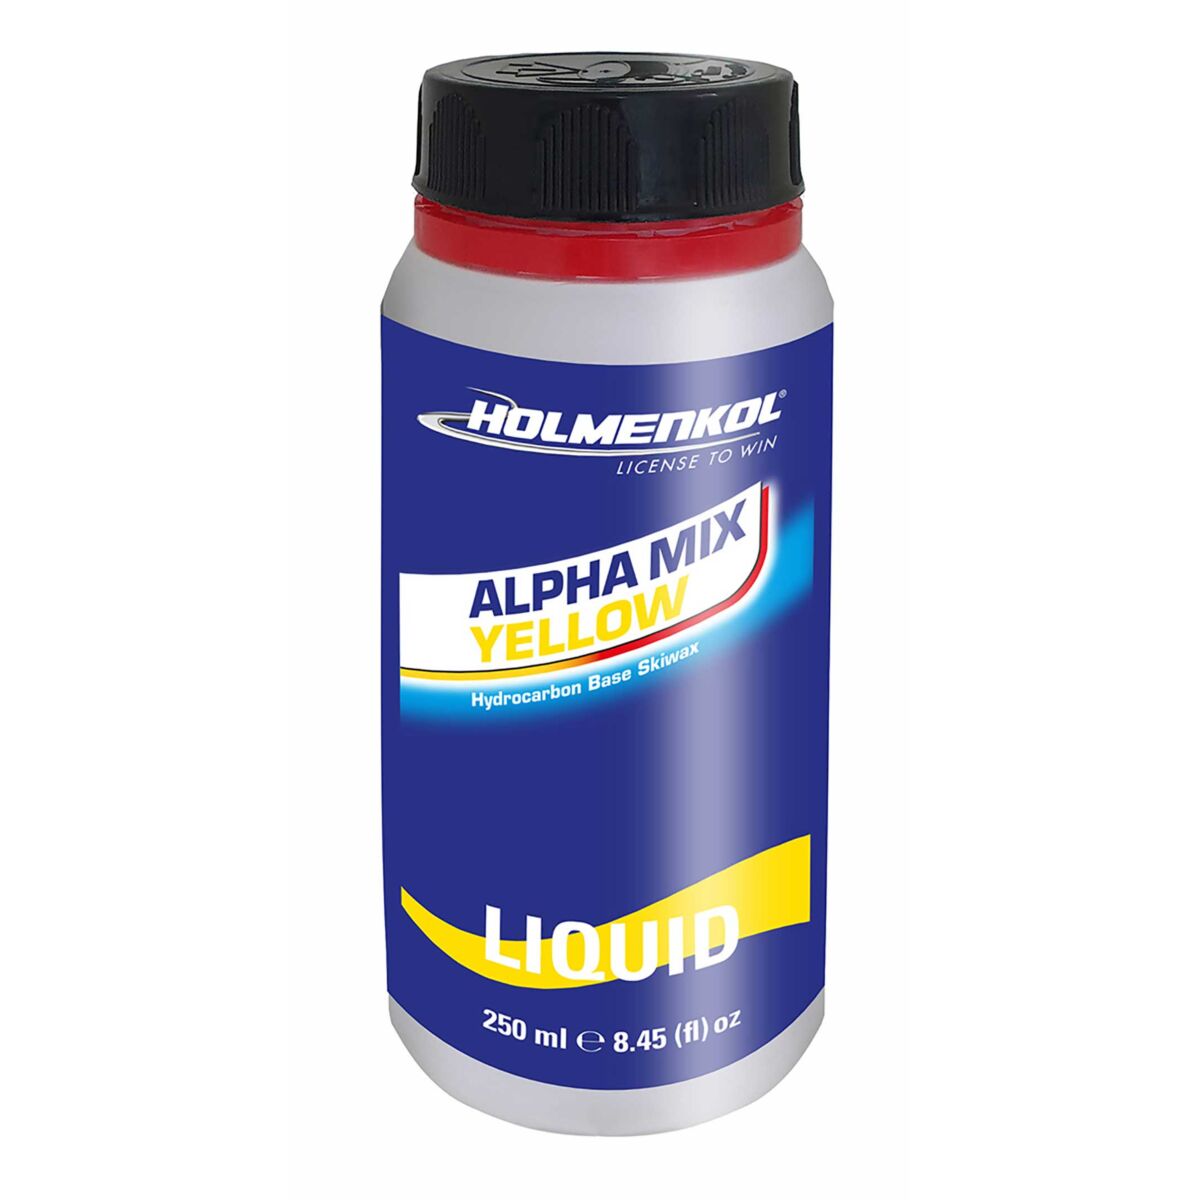 Holmenkol Alphamix yellow liquid wax 250 ml